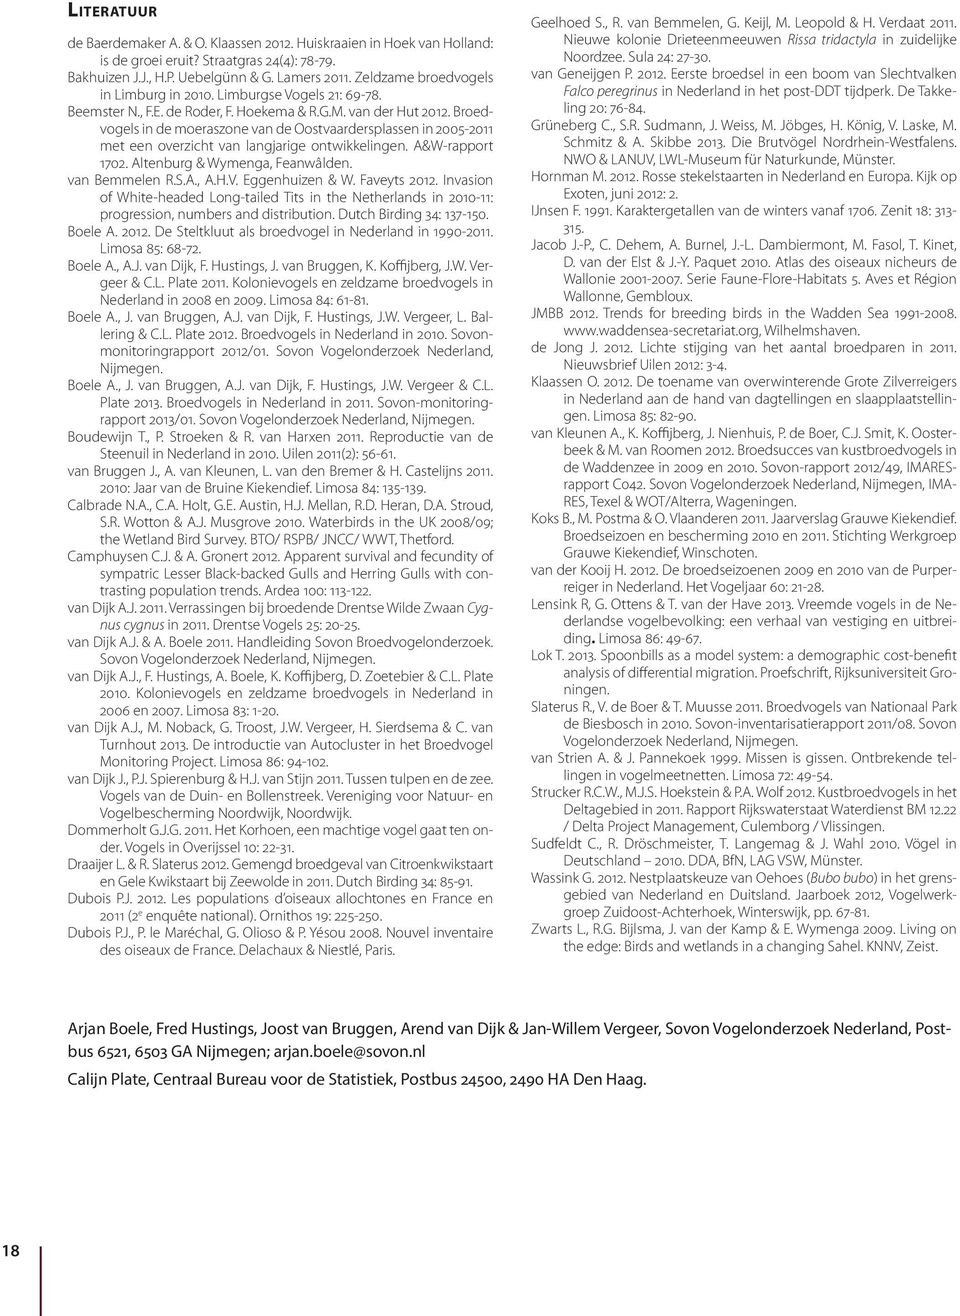 Broedvogels in de moeraszone van de Oostvaardersplassen in 25-211 met een overzicht van langjarige ontwikkelingen. A&W-rapport 172. Altenburg & Wymenga, Feanwâlden. van Bemmelen R.S.A., A.H.V.